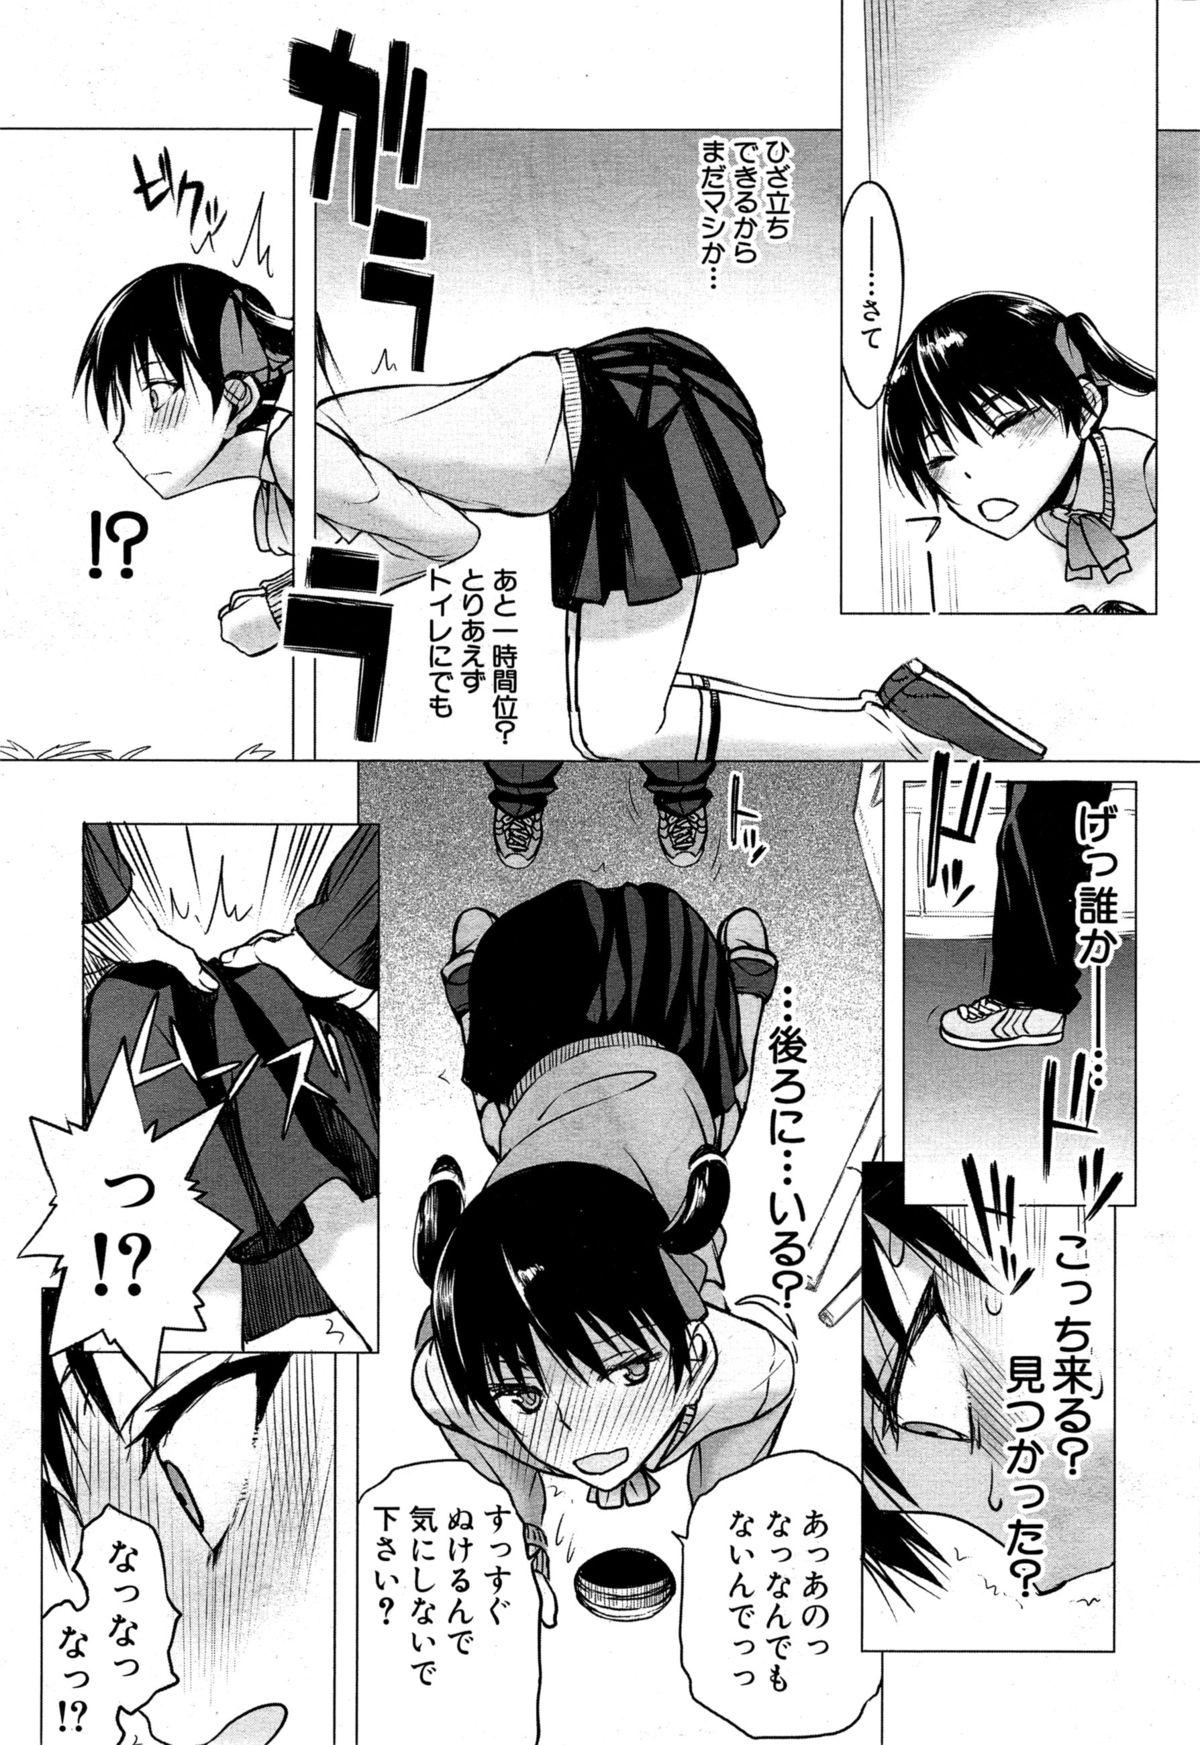 Shorts Kabe no Naka ni Iru Ch. 1-2 Bang Bros - Page 5